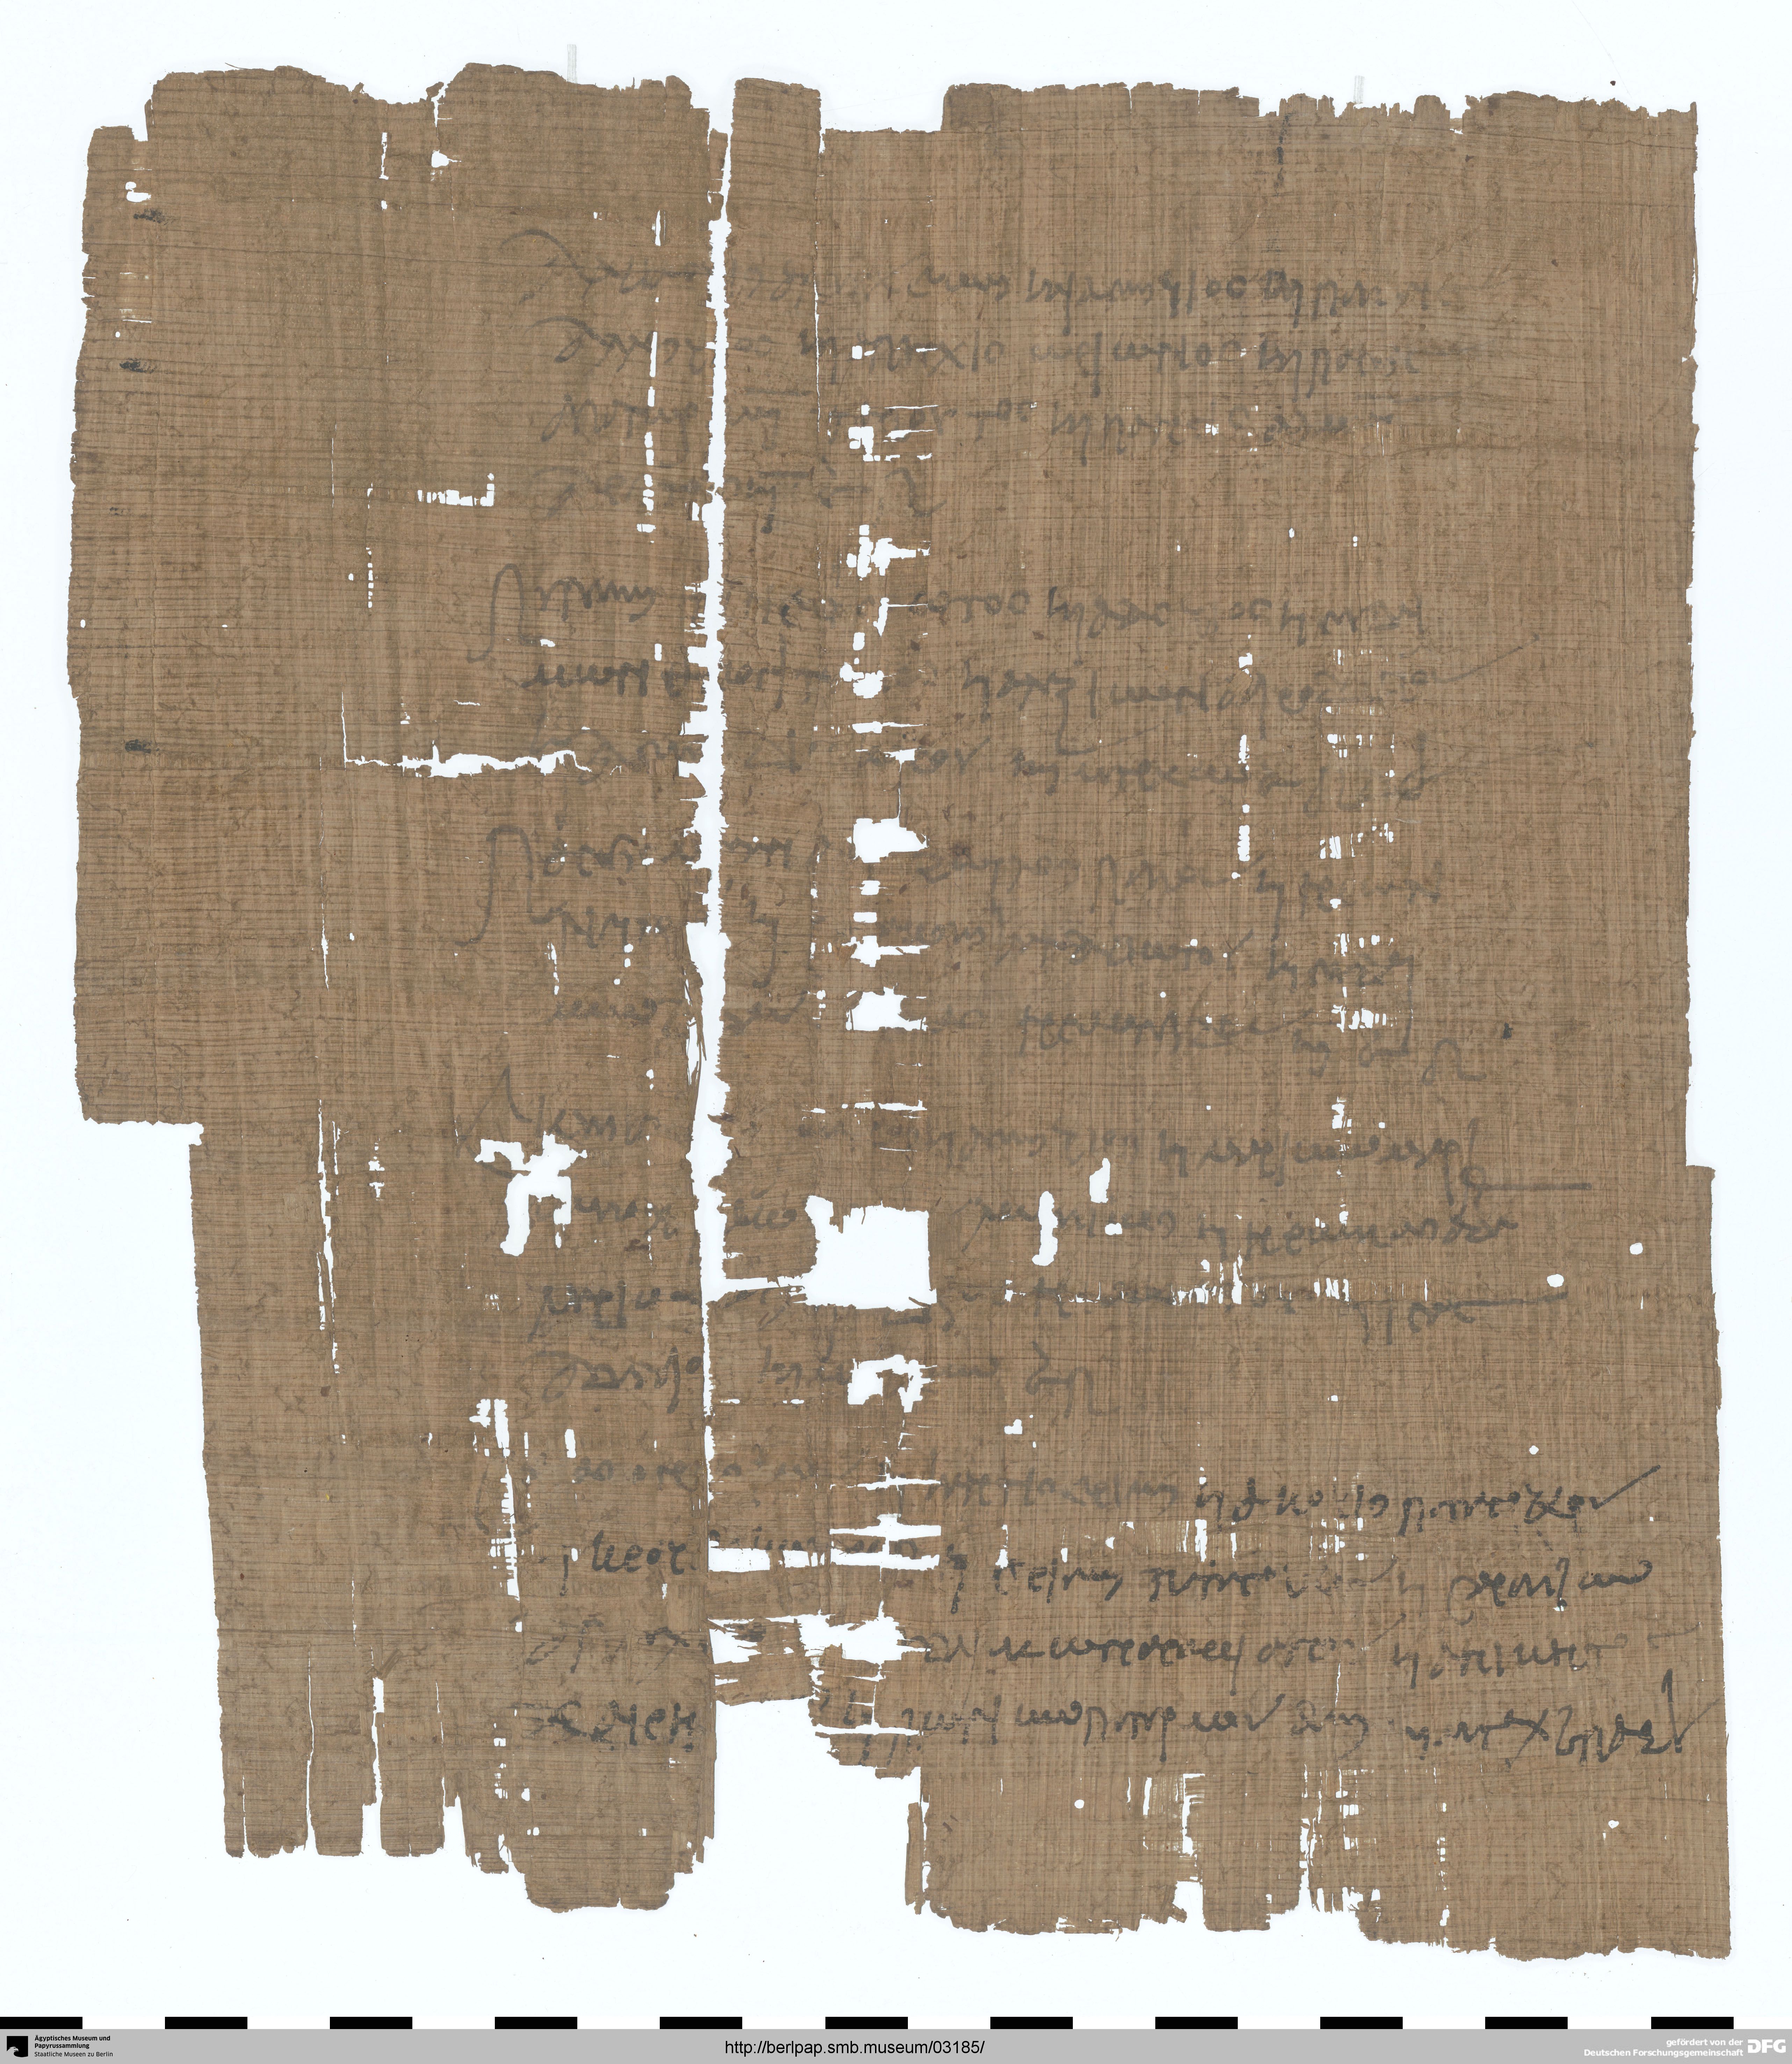 http://berlpap.smb.museum/Original/P_11642-Pl-A_R_2_001.jpg (Ägyptisches Museum und Papyrussammlung, Staatliche Museen zu Berlin CC BY-NC-SA)